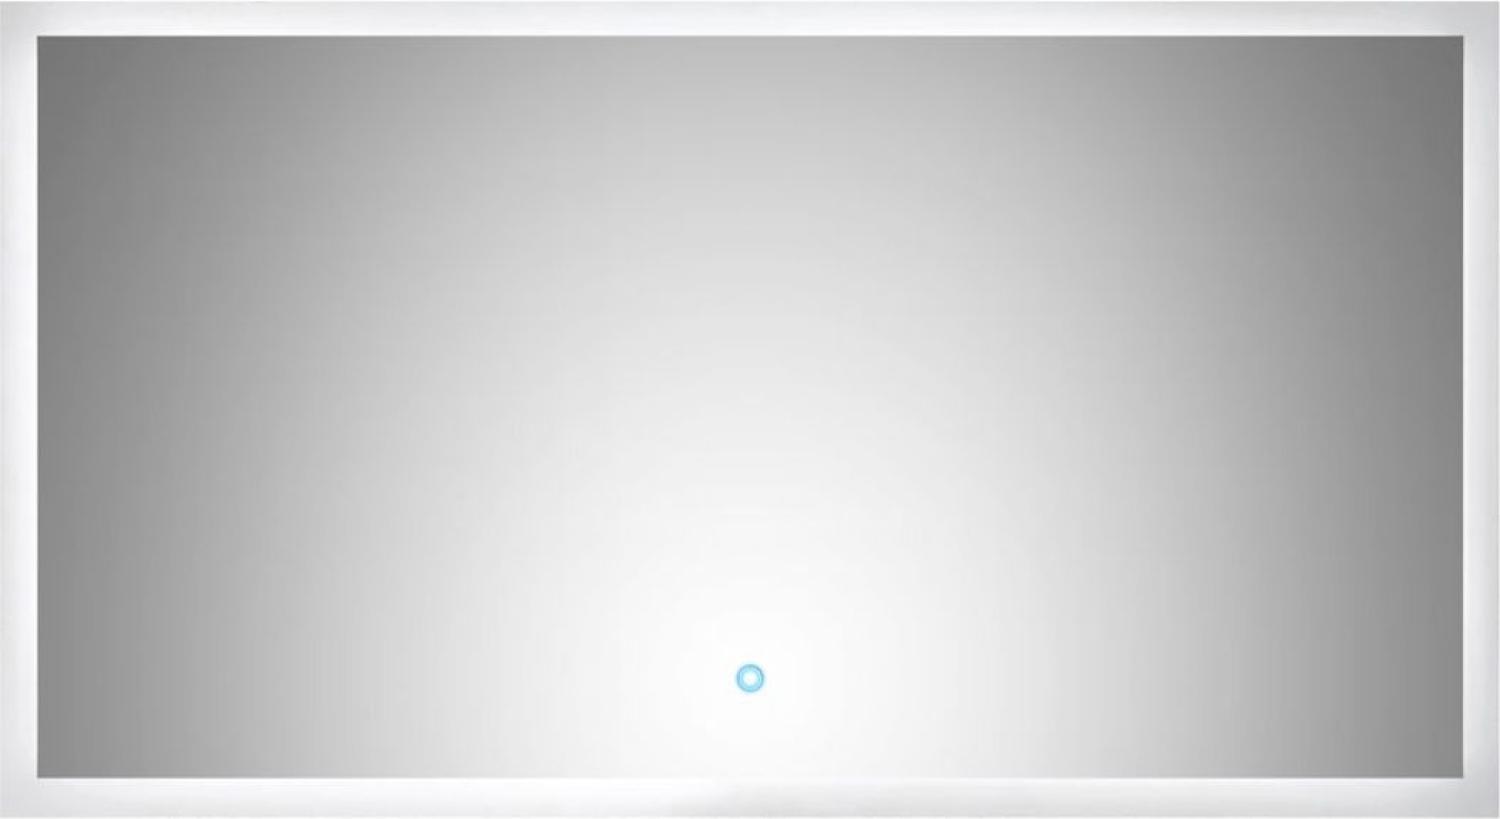 Badspiegel Homeline inkl. Beleuchtung 120 x 65 cm Bild 1